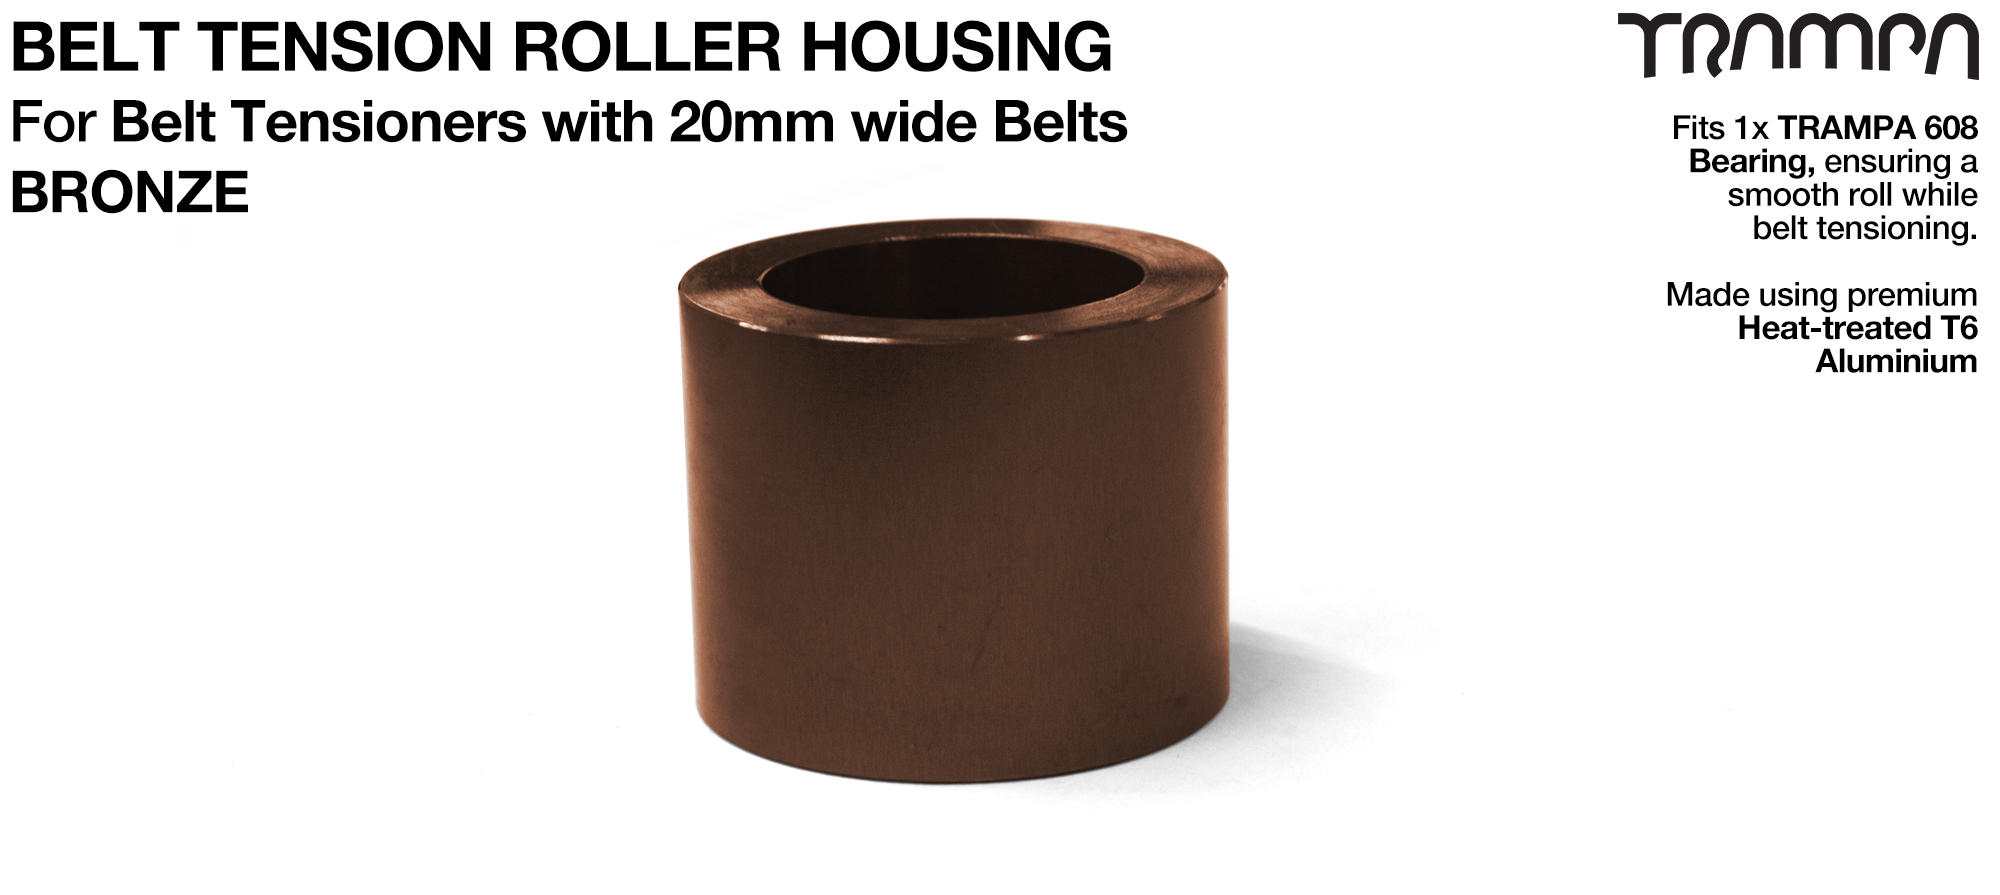 Belt Tension Roller Housing for 20mm Belts - BRONZE